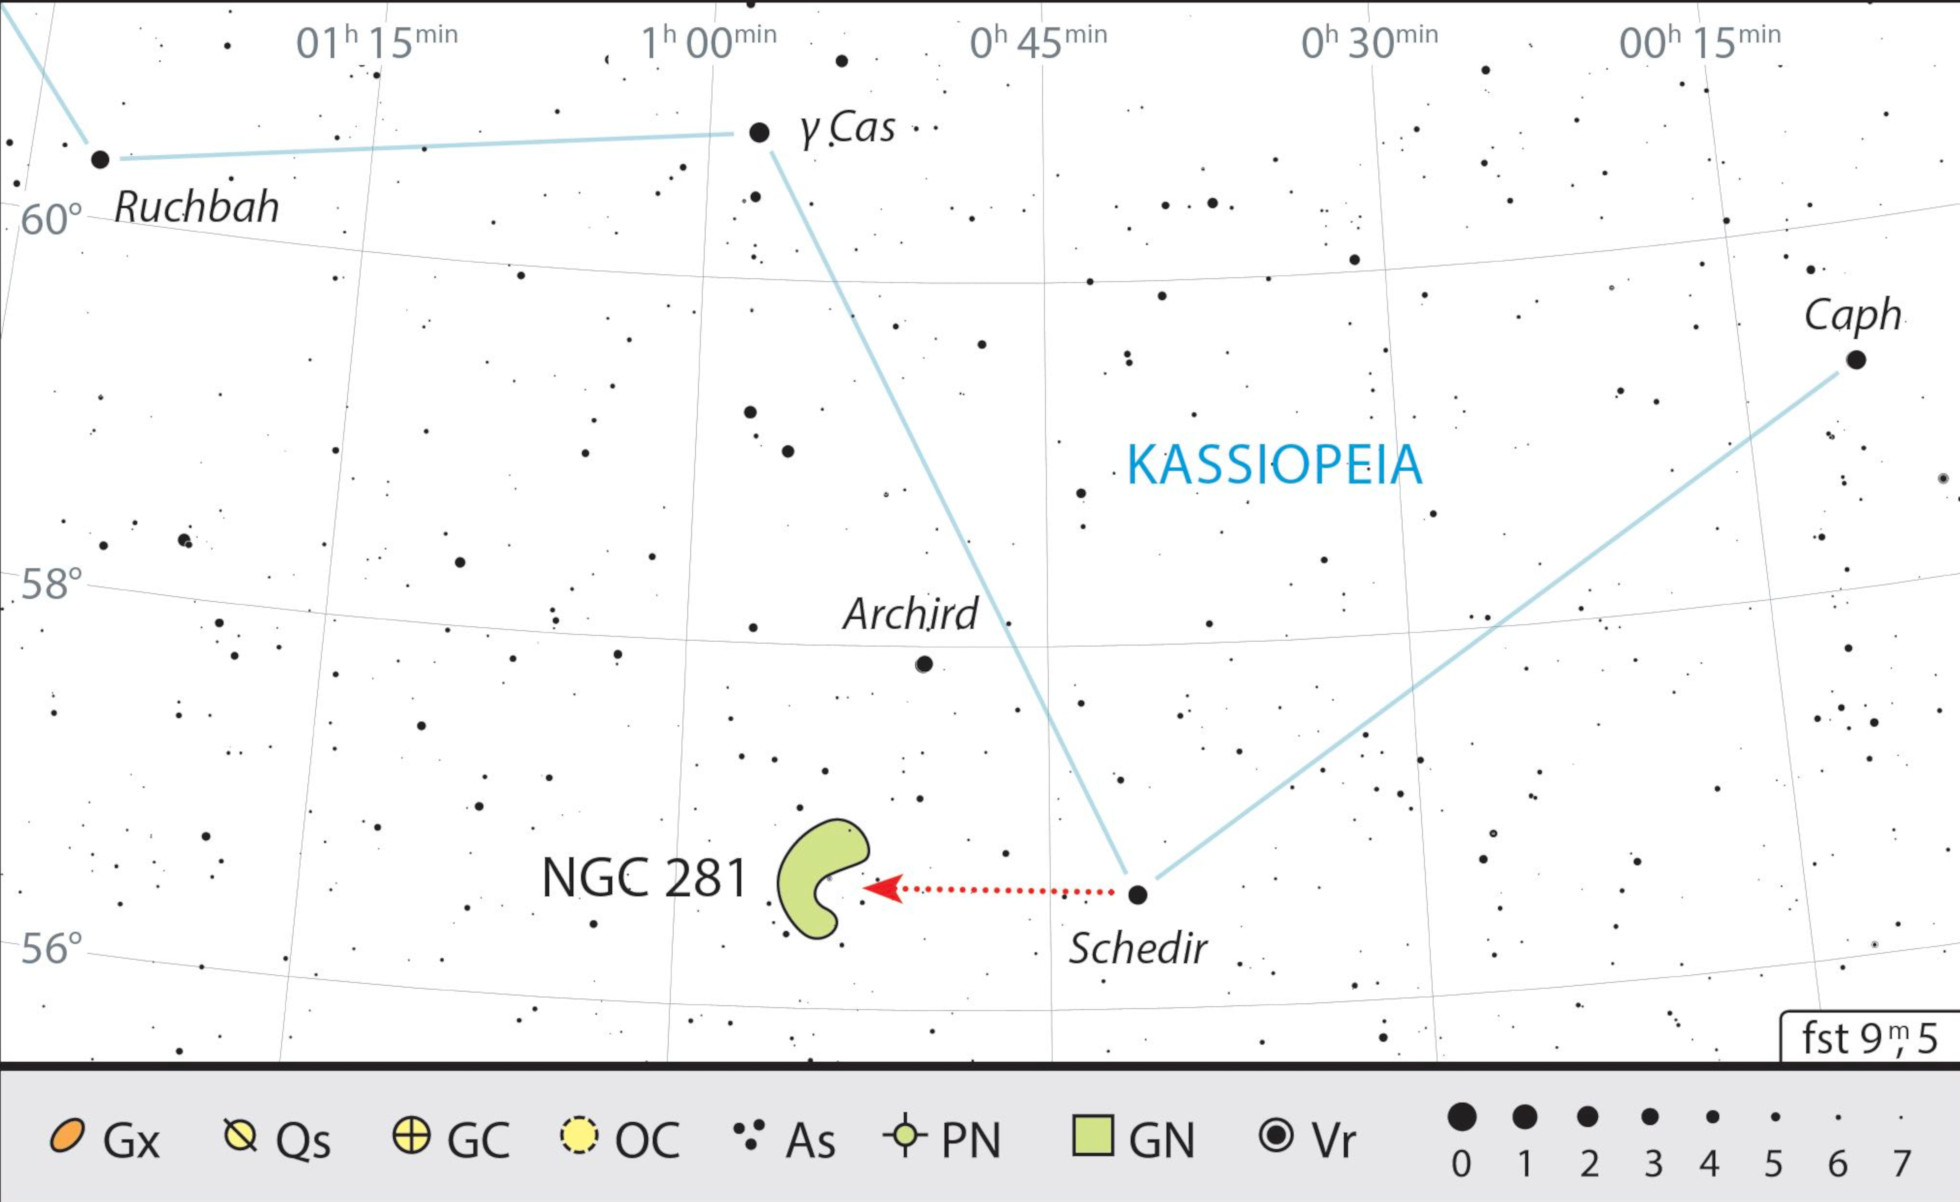 A Nebulosa Pacman está muito próxima de α Cas (Schedir), a estrela principal de Cassiopeia. J. Scholten 